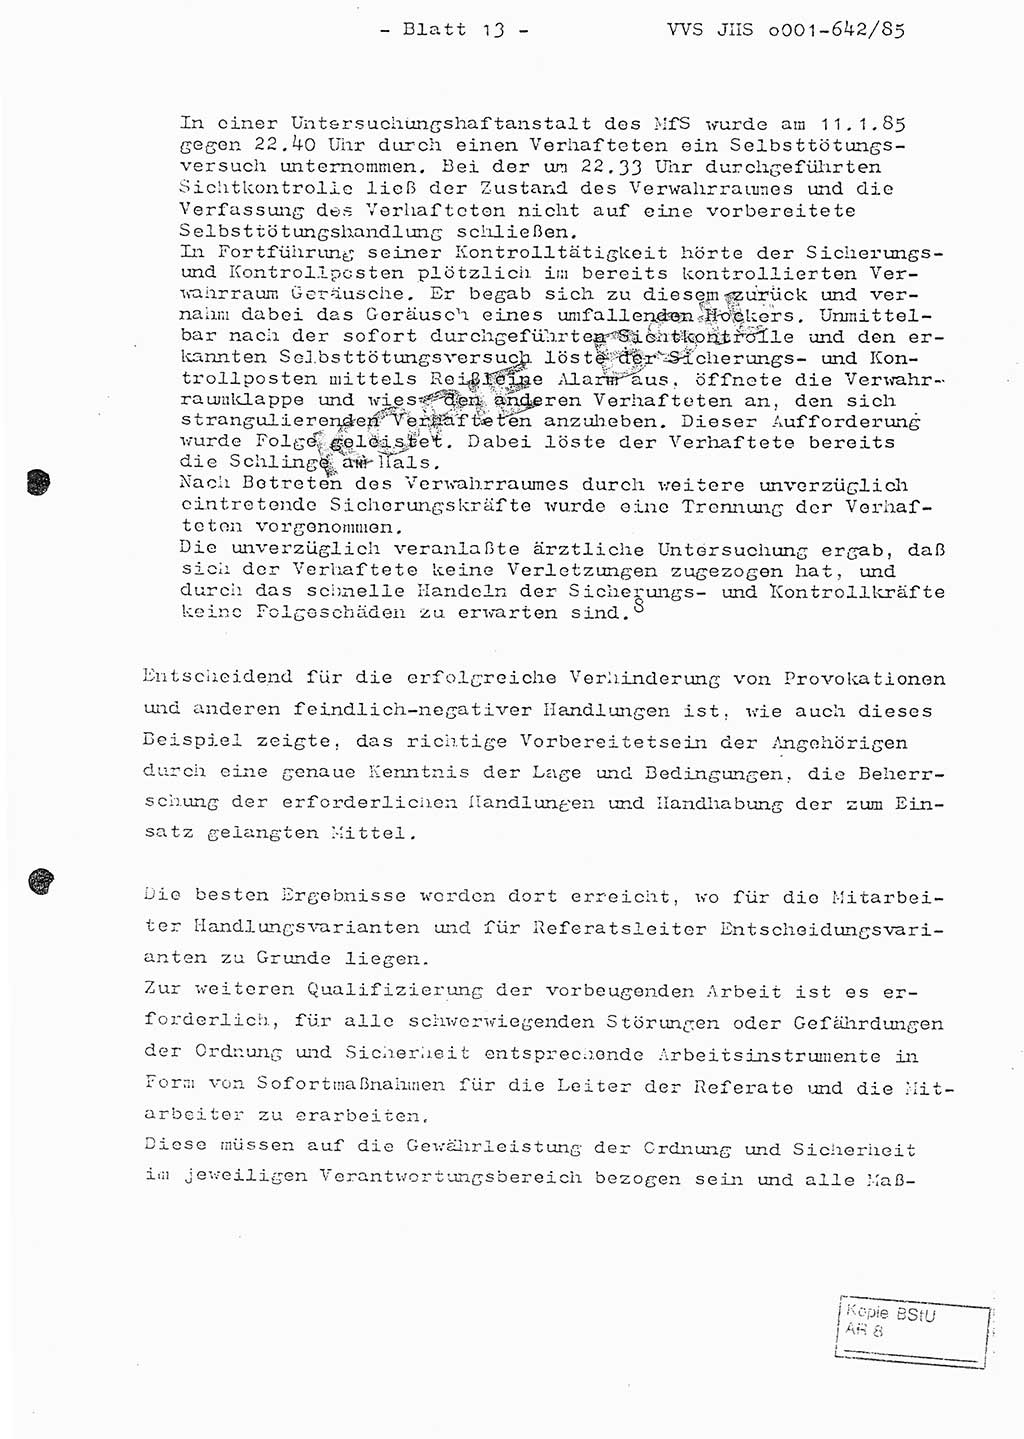 Fachschulabschlußarbeit Oberleutnant Lothar Fahland (Abt. ⅩⅣ), Ministerium für Staatssicherheit (MfS) [Deutsche Demokratische Republik (DDR)], Juristische Hochschule (JHS), Vertrauliche Verschlußsache (VVS) o001-642/85, Potsdam 1985, Blatt 13 (FS-Abschl.-Arb. MfS DDR JHS VVS o001-642/85 1985, Bl. 13)